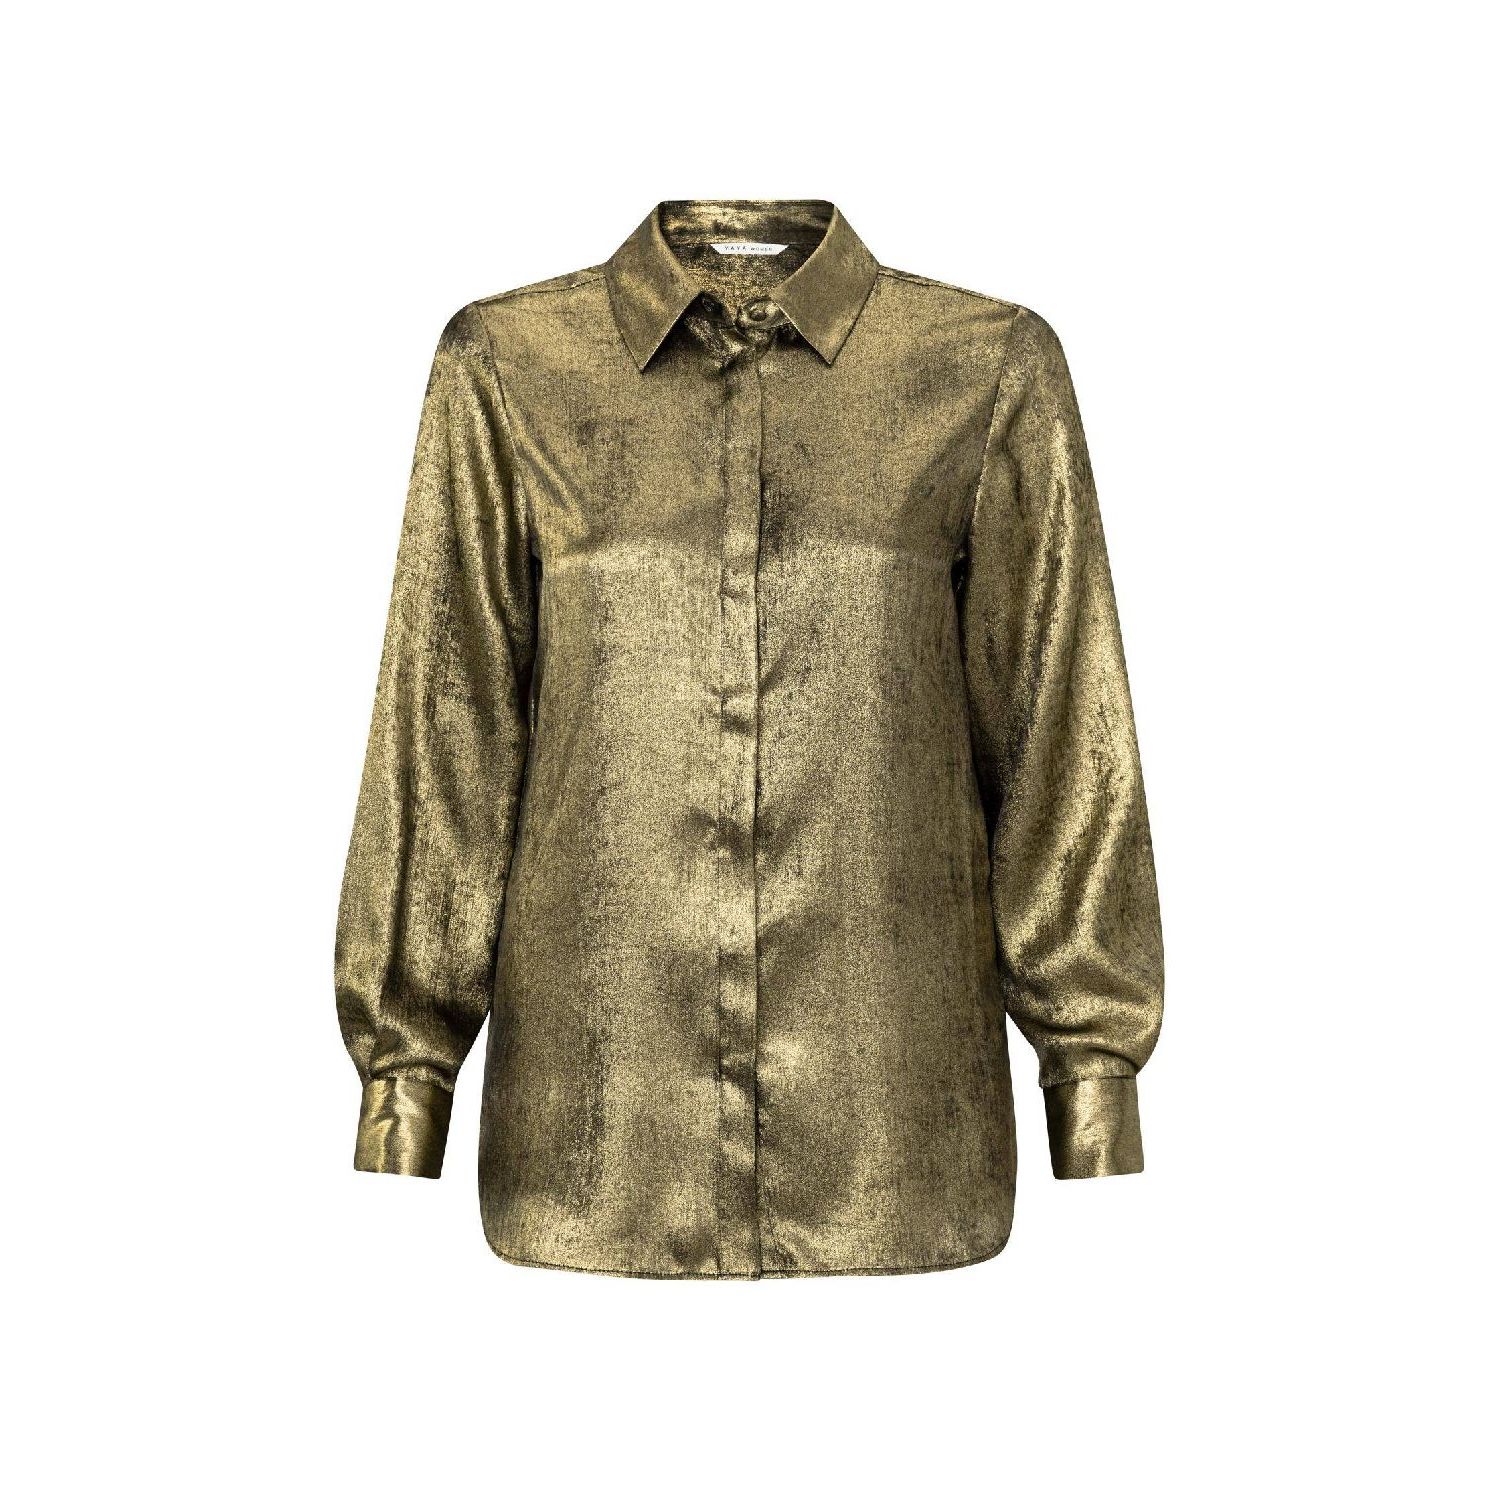 YAYA metallic button down blouse dark gold